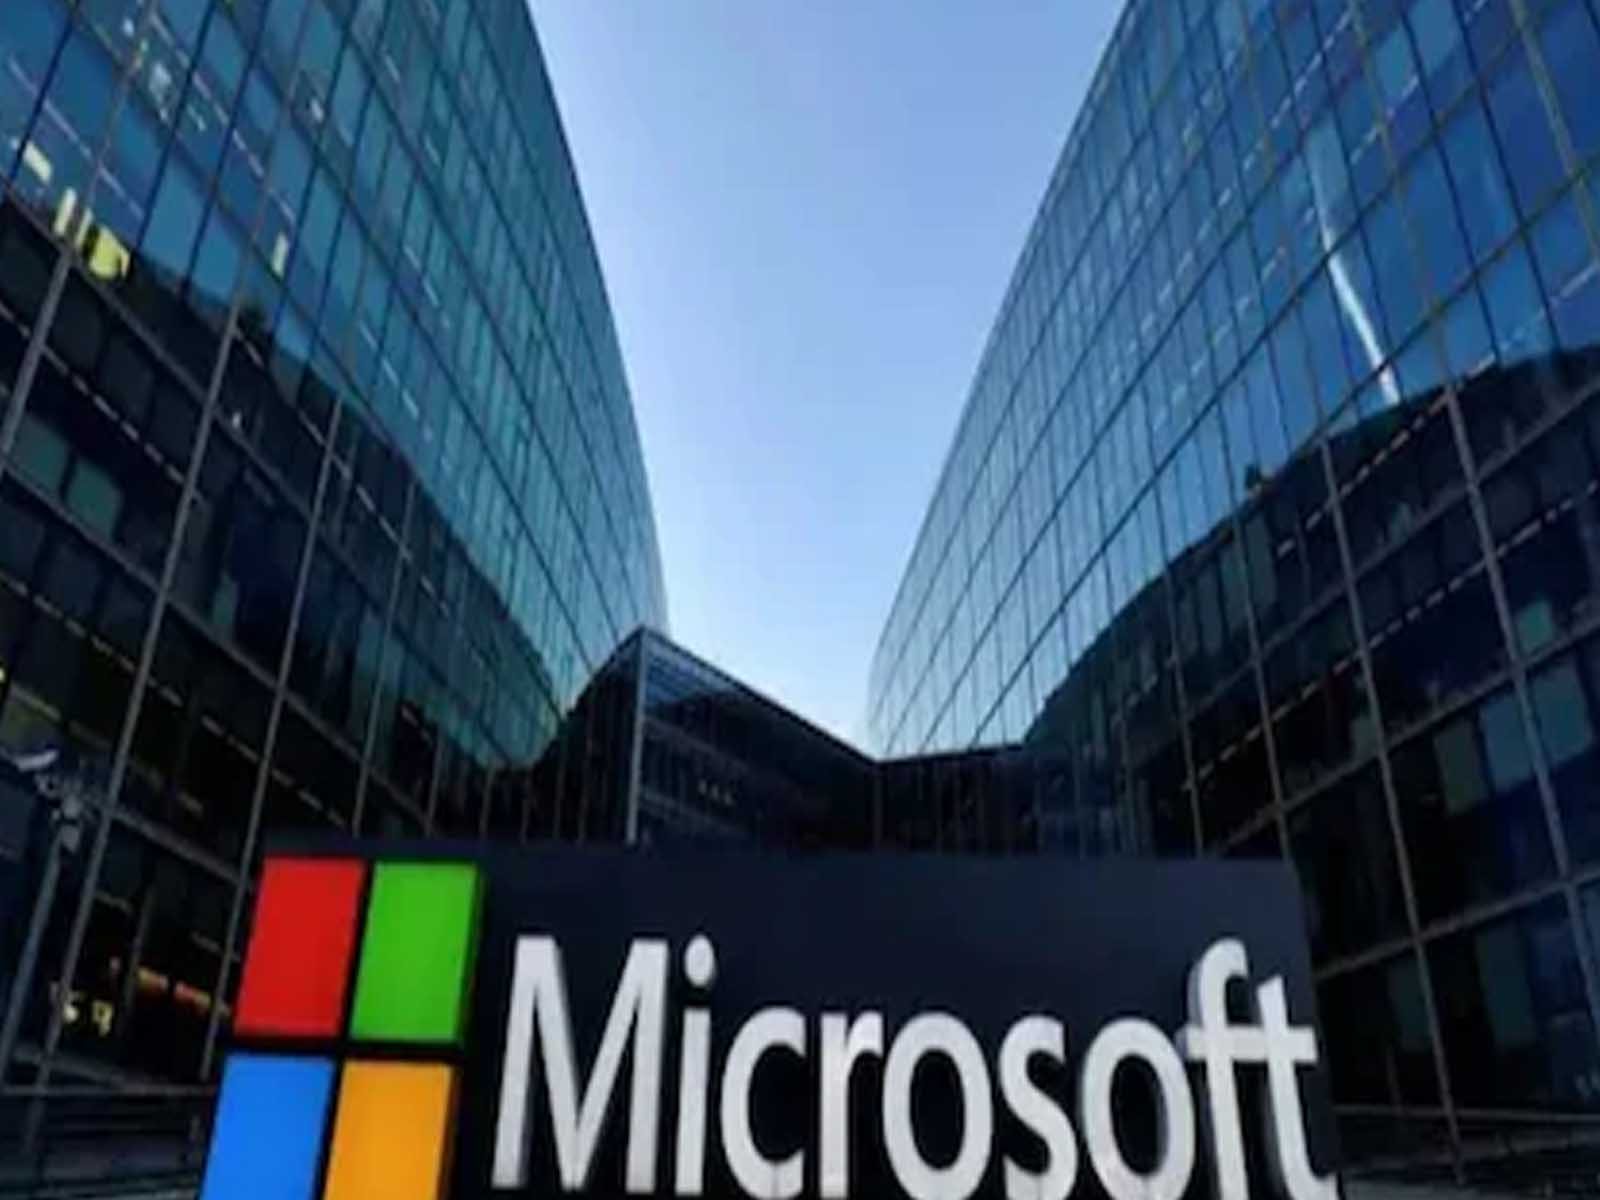 Microsoft ਨੇ Facebook ਨੂੰ ਟੱਕਰ ਦੇਣ ਲਈ ਲਾਂਚ ਕੀਤਾ ਨਵਾਂ ਪਲੇਟਫਾਰਮ, ਜਾਣੋ ਖਾਸੀਅਤ
